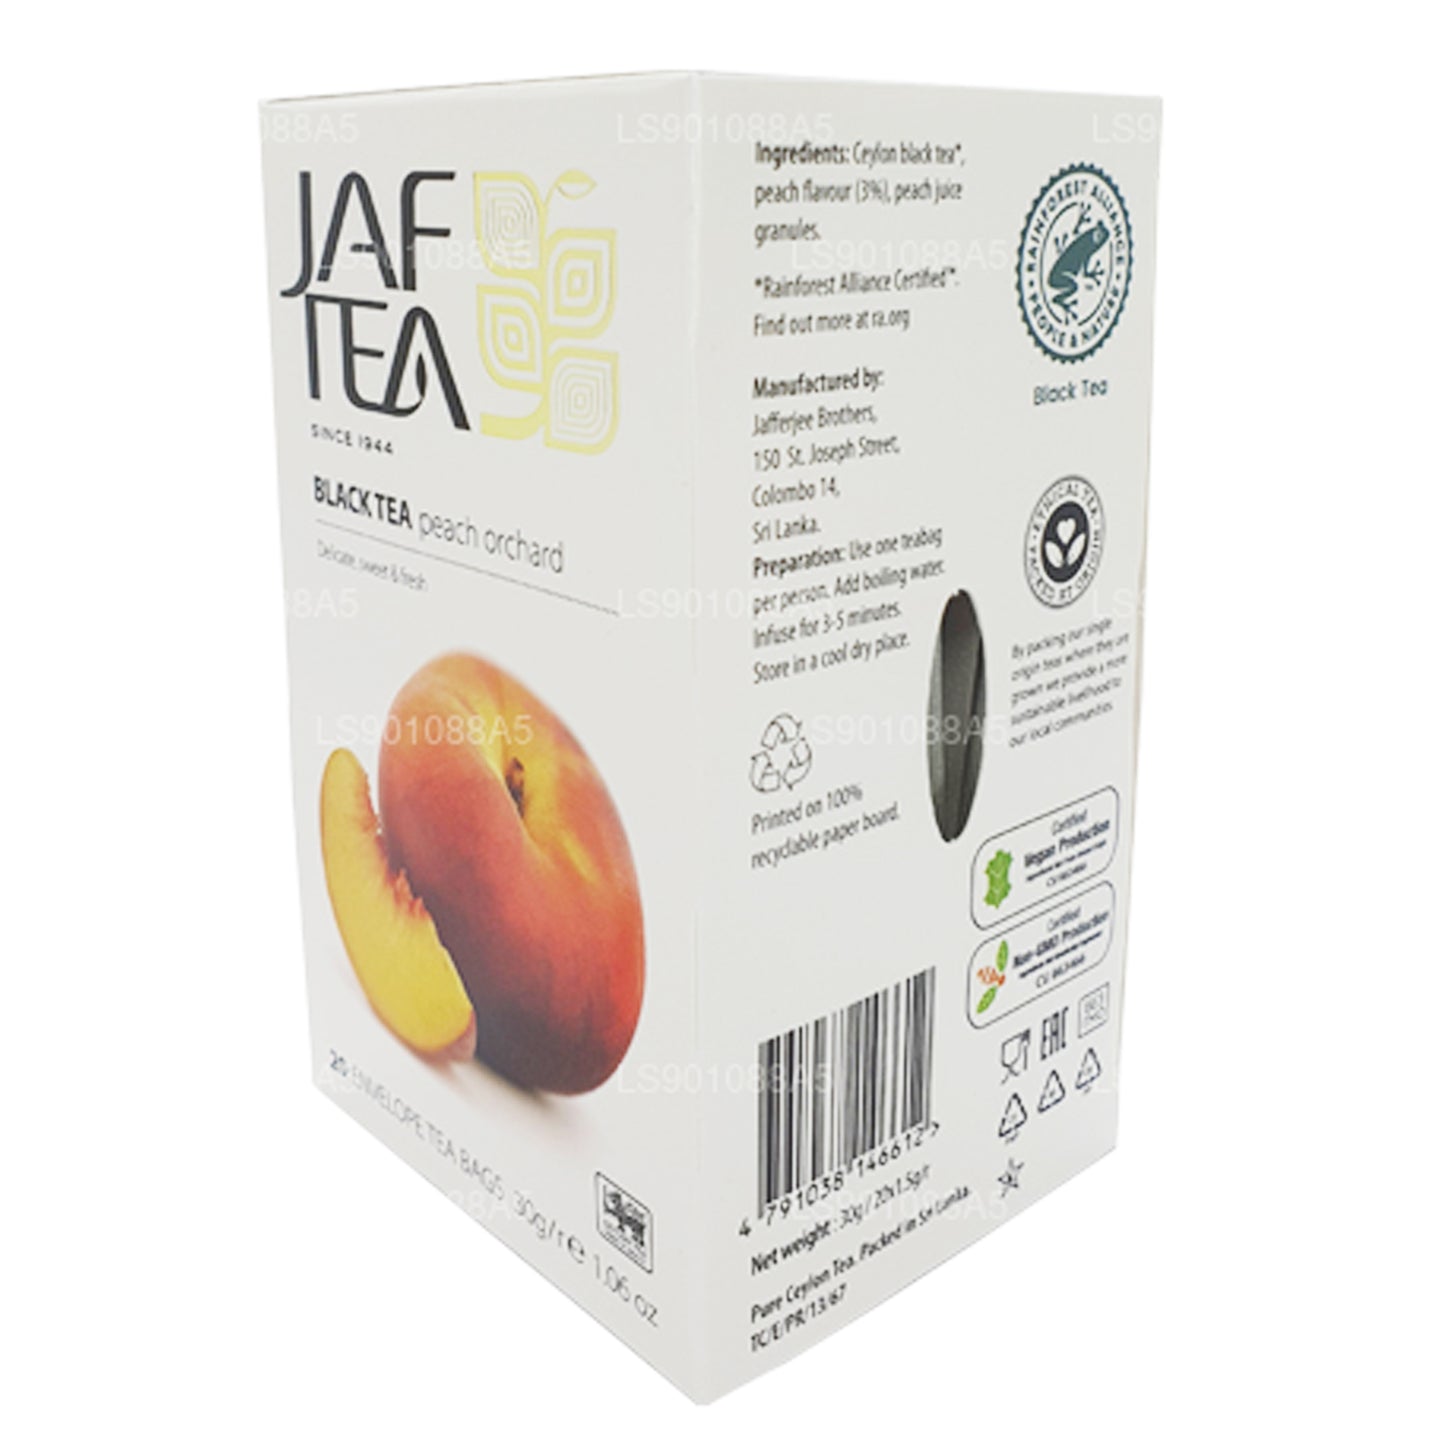 Jaf Tea Pure Fruits Collection Black Tea Peach Orchard (30 g) 20 Teebeutel